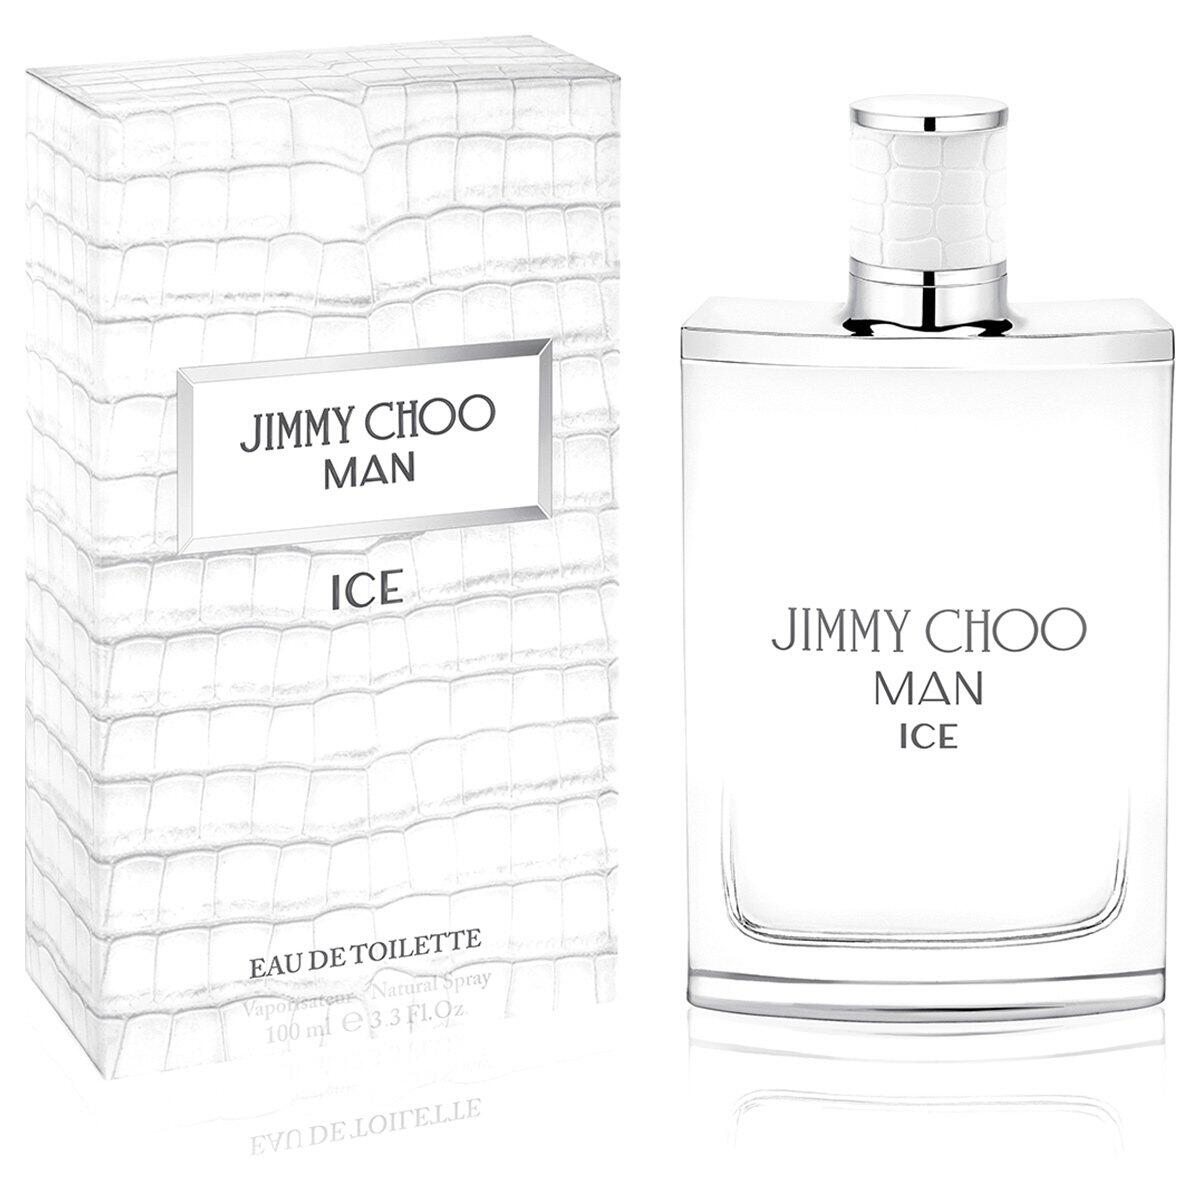 Man Ice - Jimmy Choo - Masculino - Eau de Toilette - 30ml